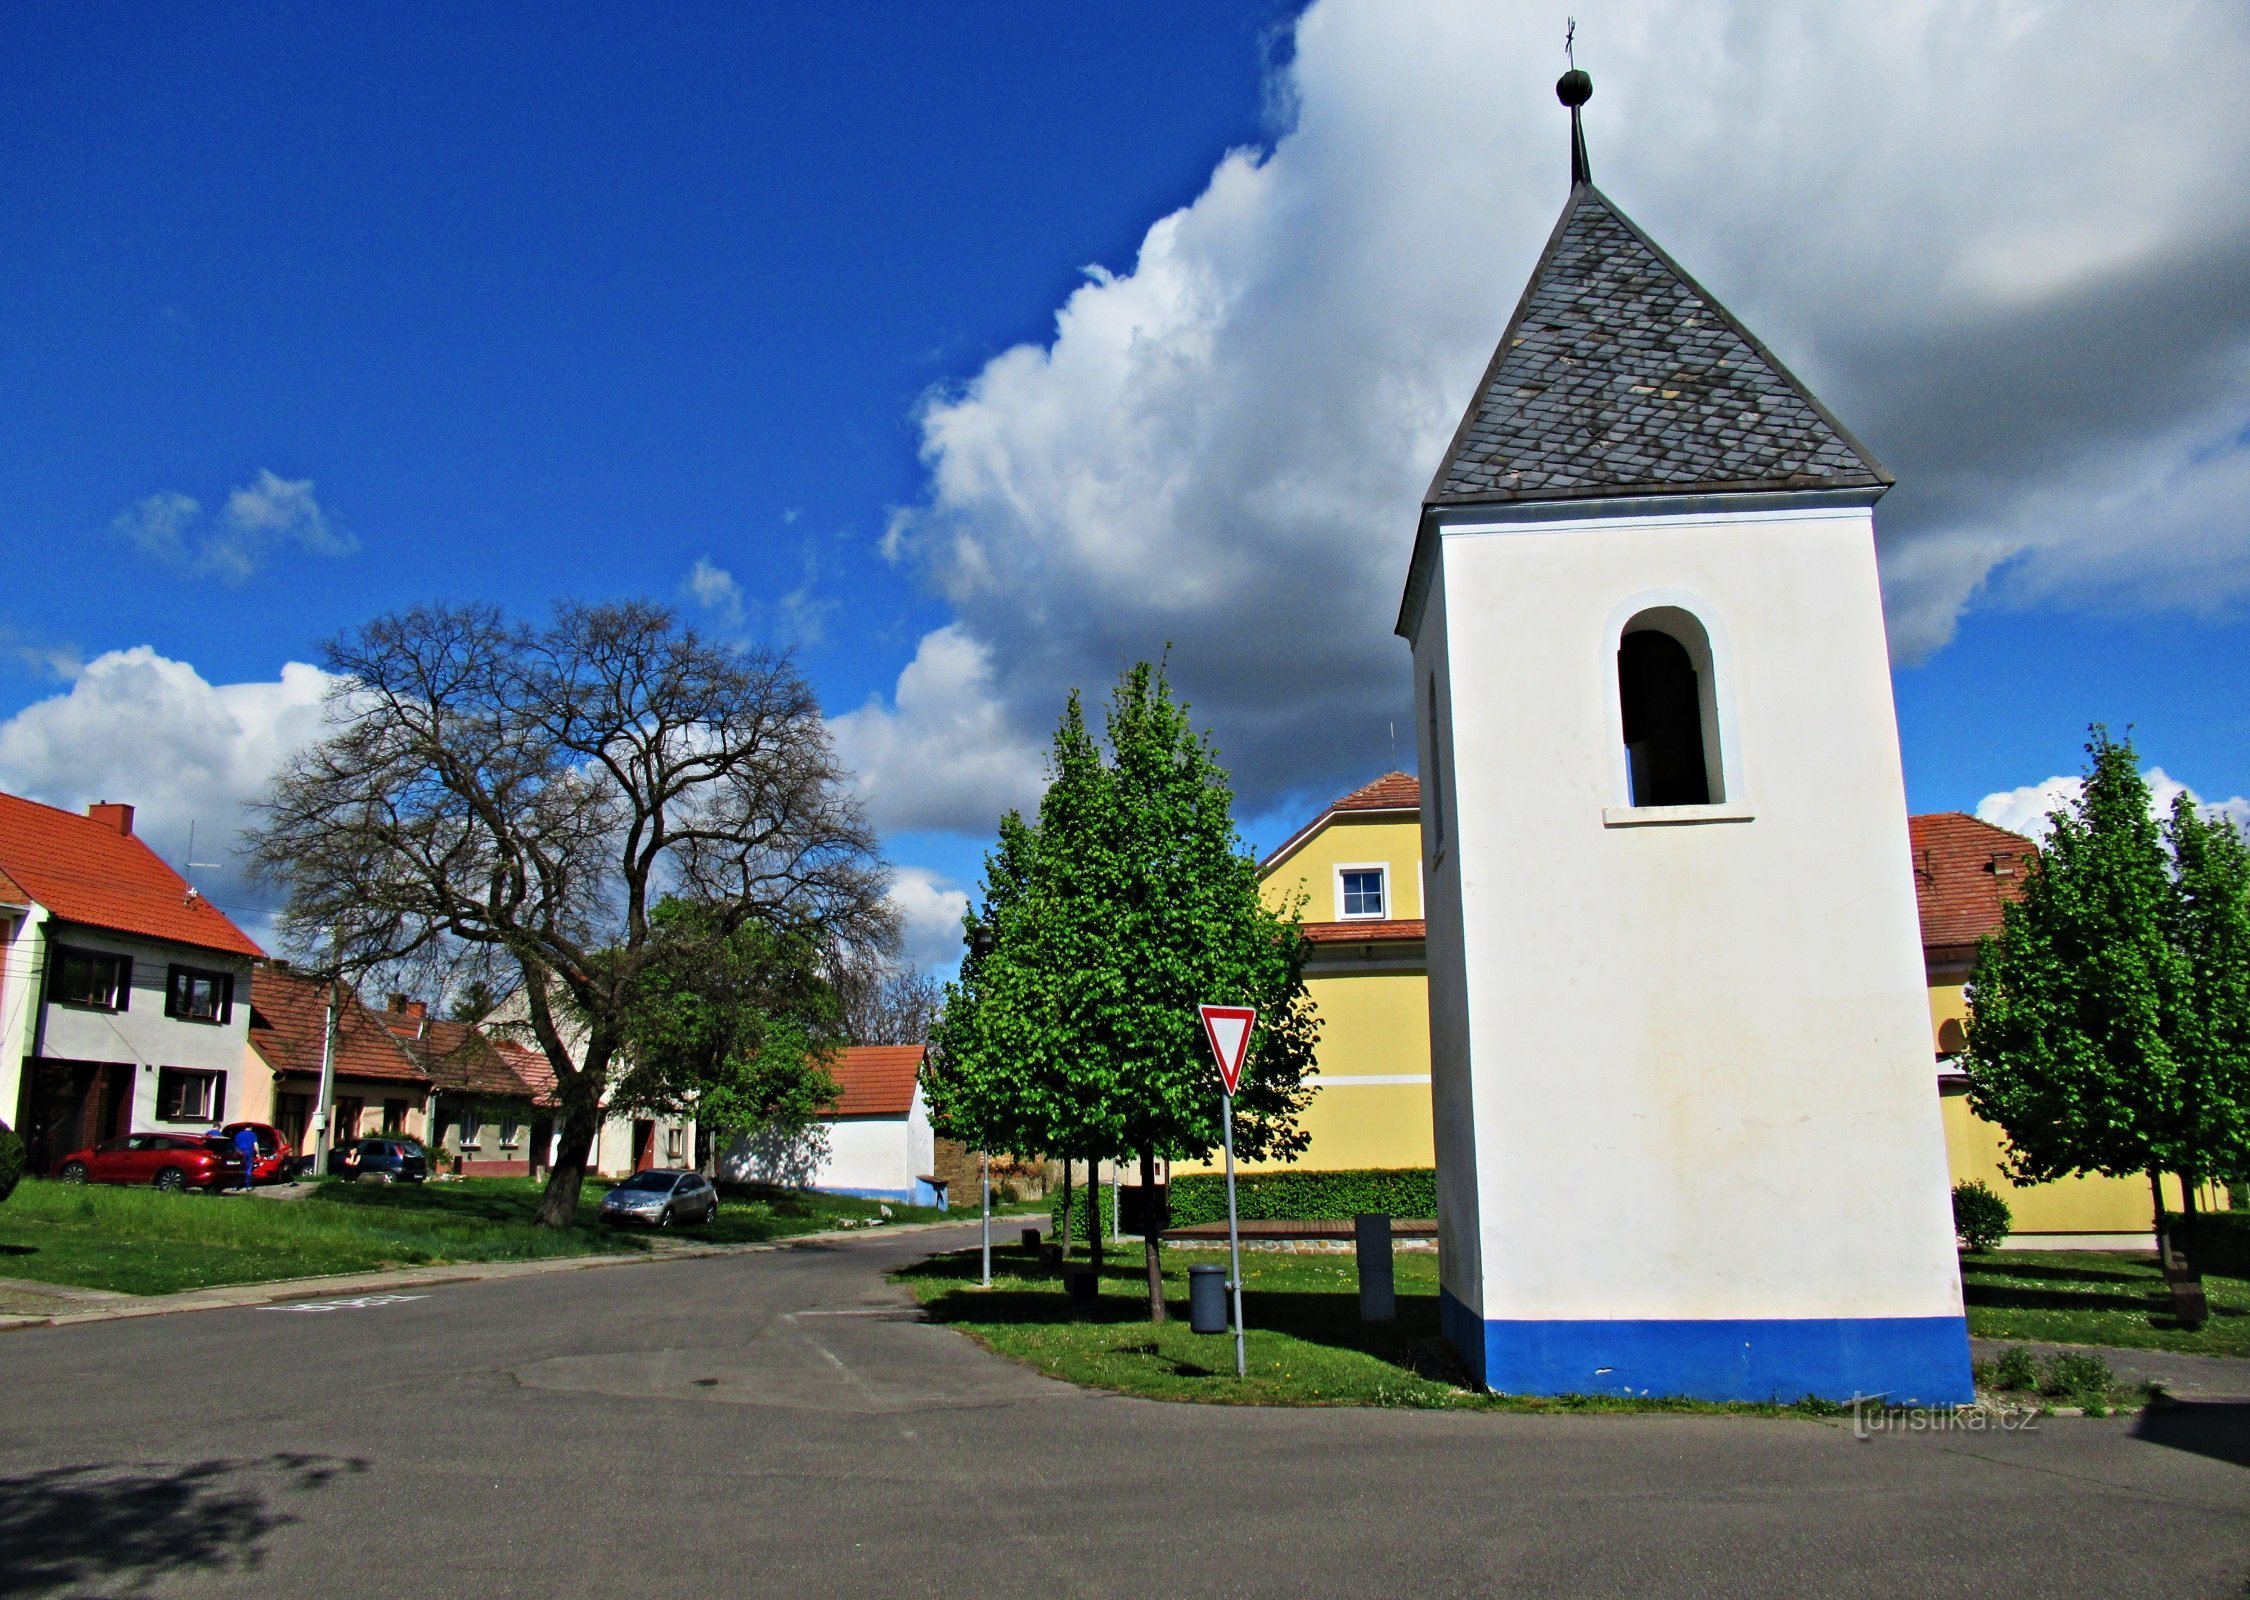 središče vasi z zvonikom